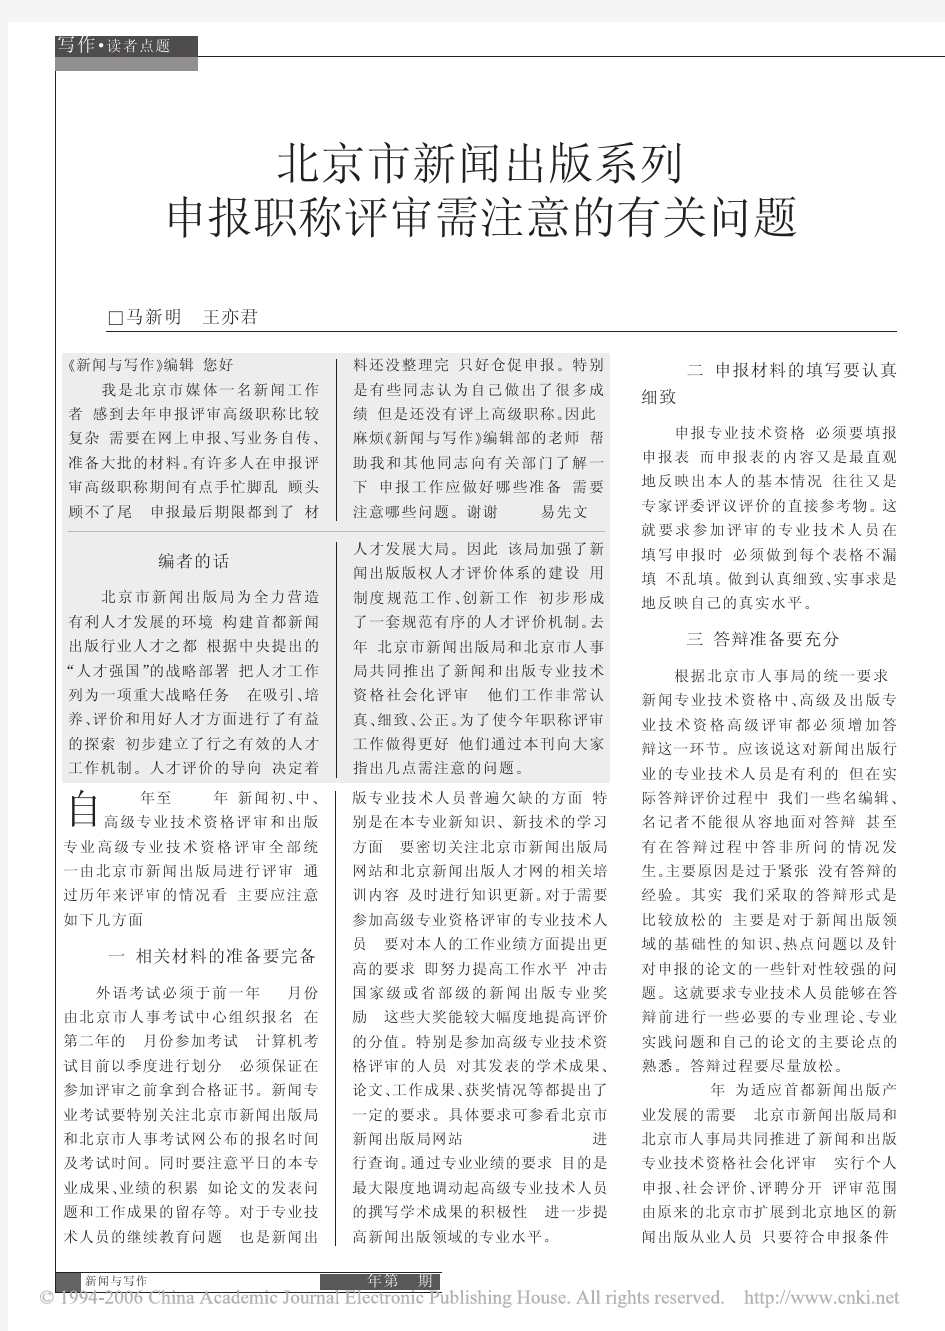 北京市新闻出版系列申报职称评审需注意的有关问题